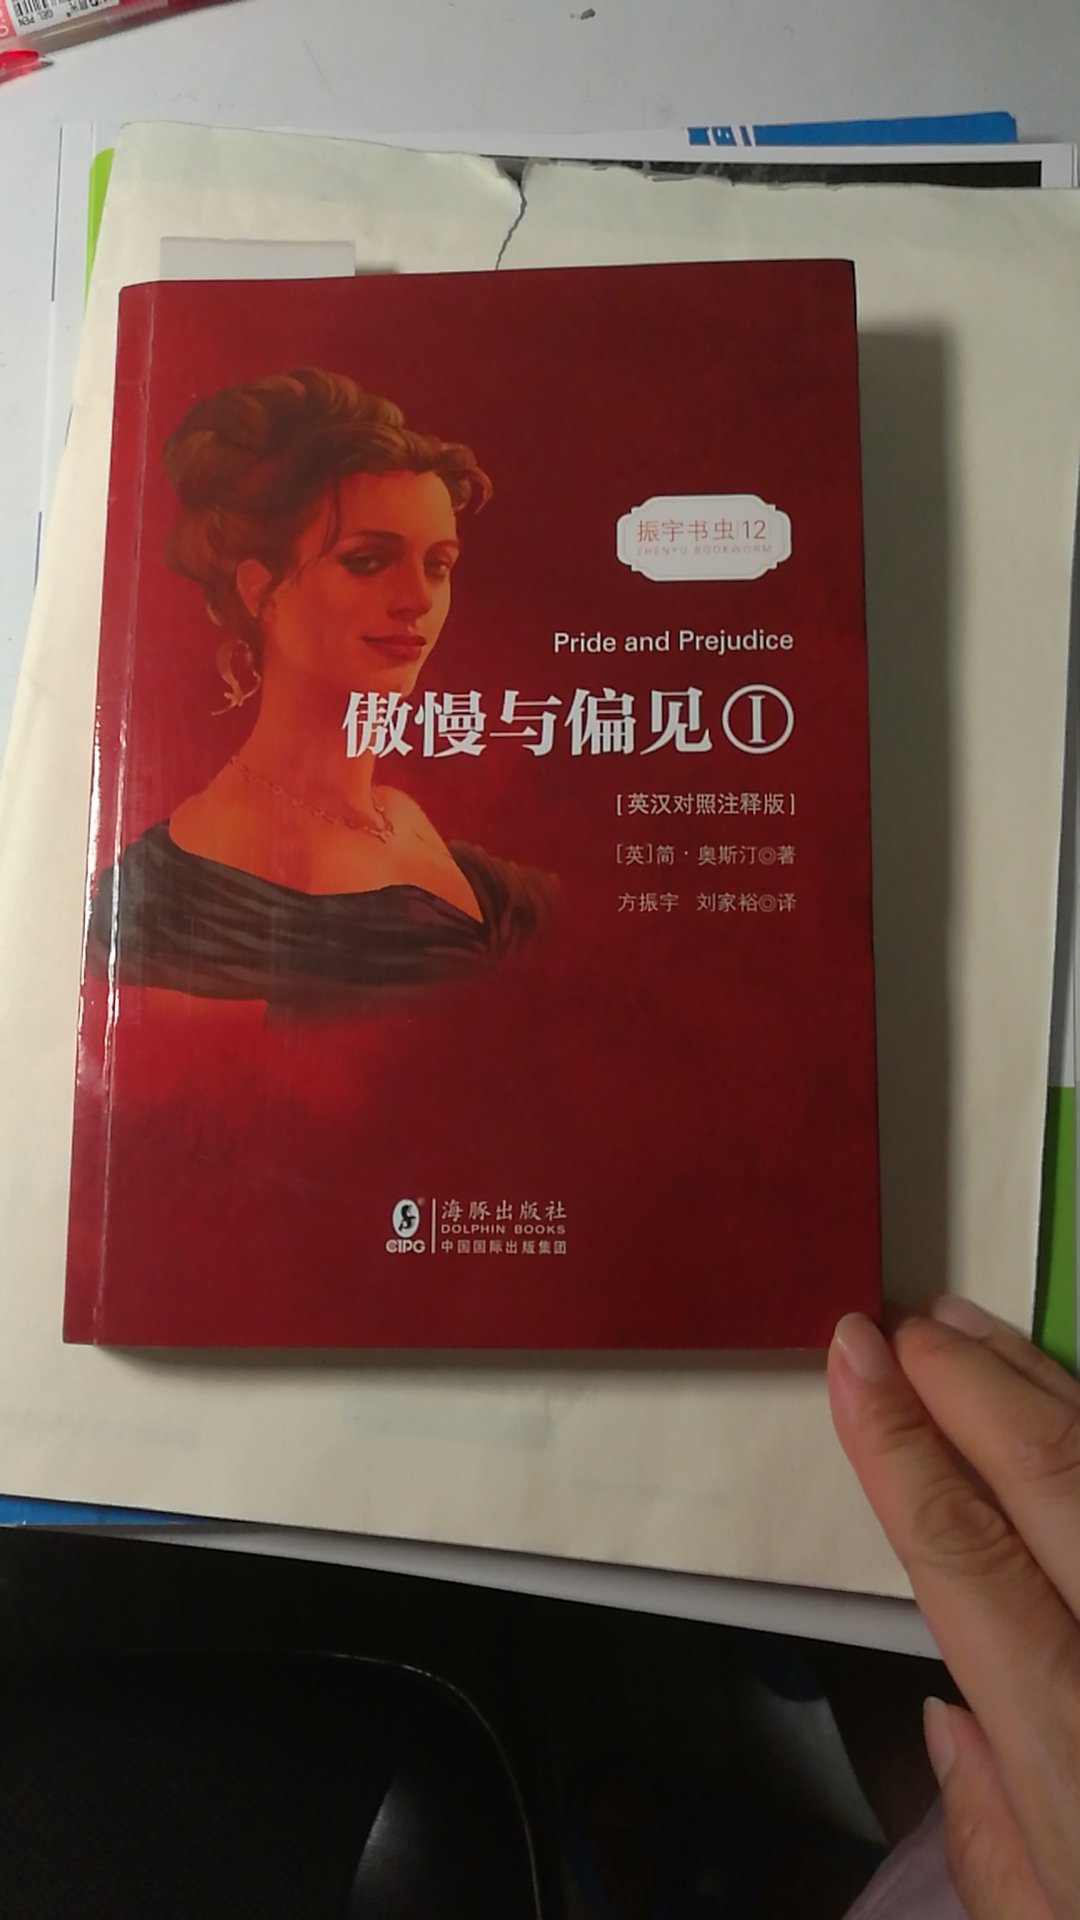 很厚两本书，纸张质量还可以，一面英文一面中文，还有部分单词注释，方便阅读理解，不错